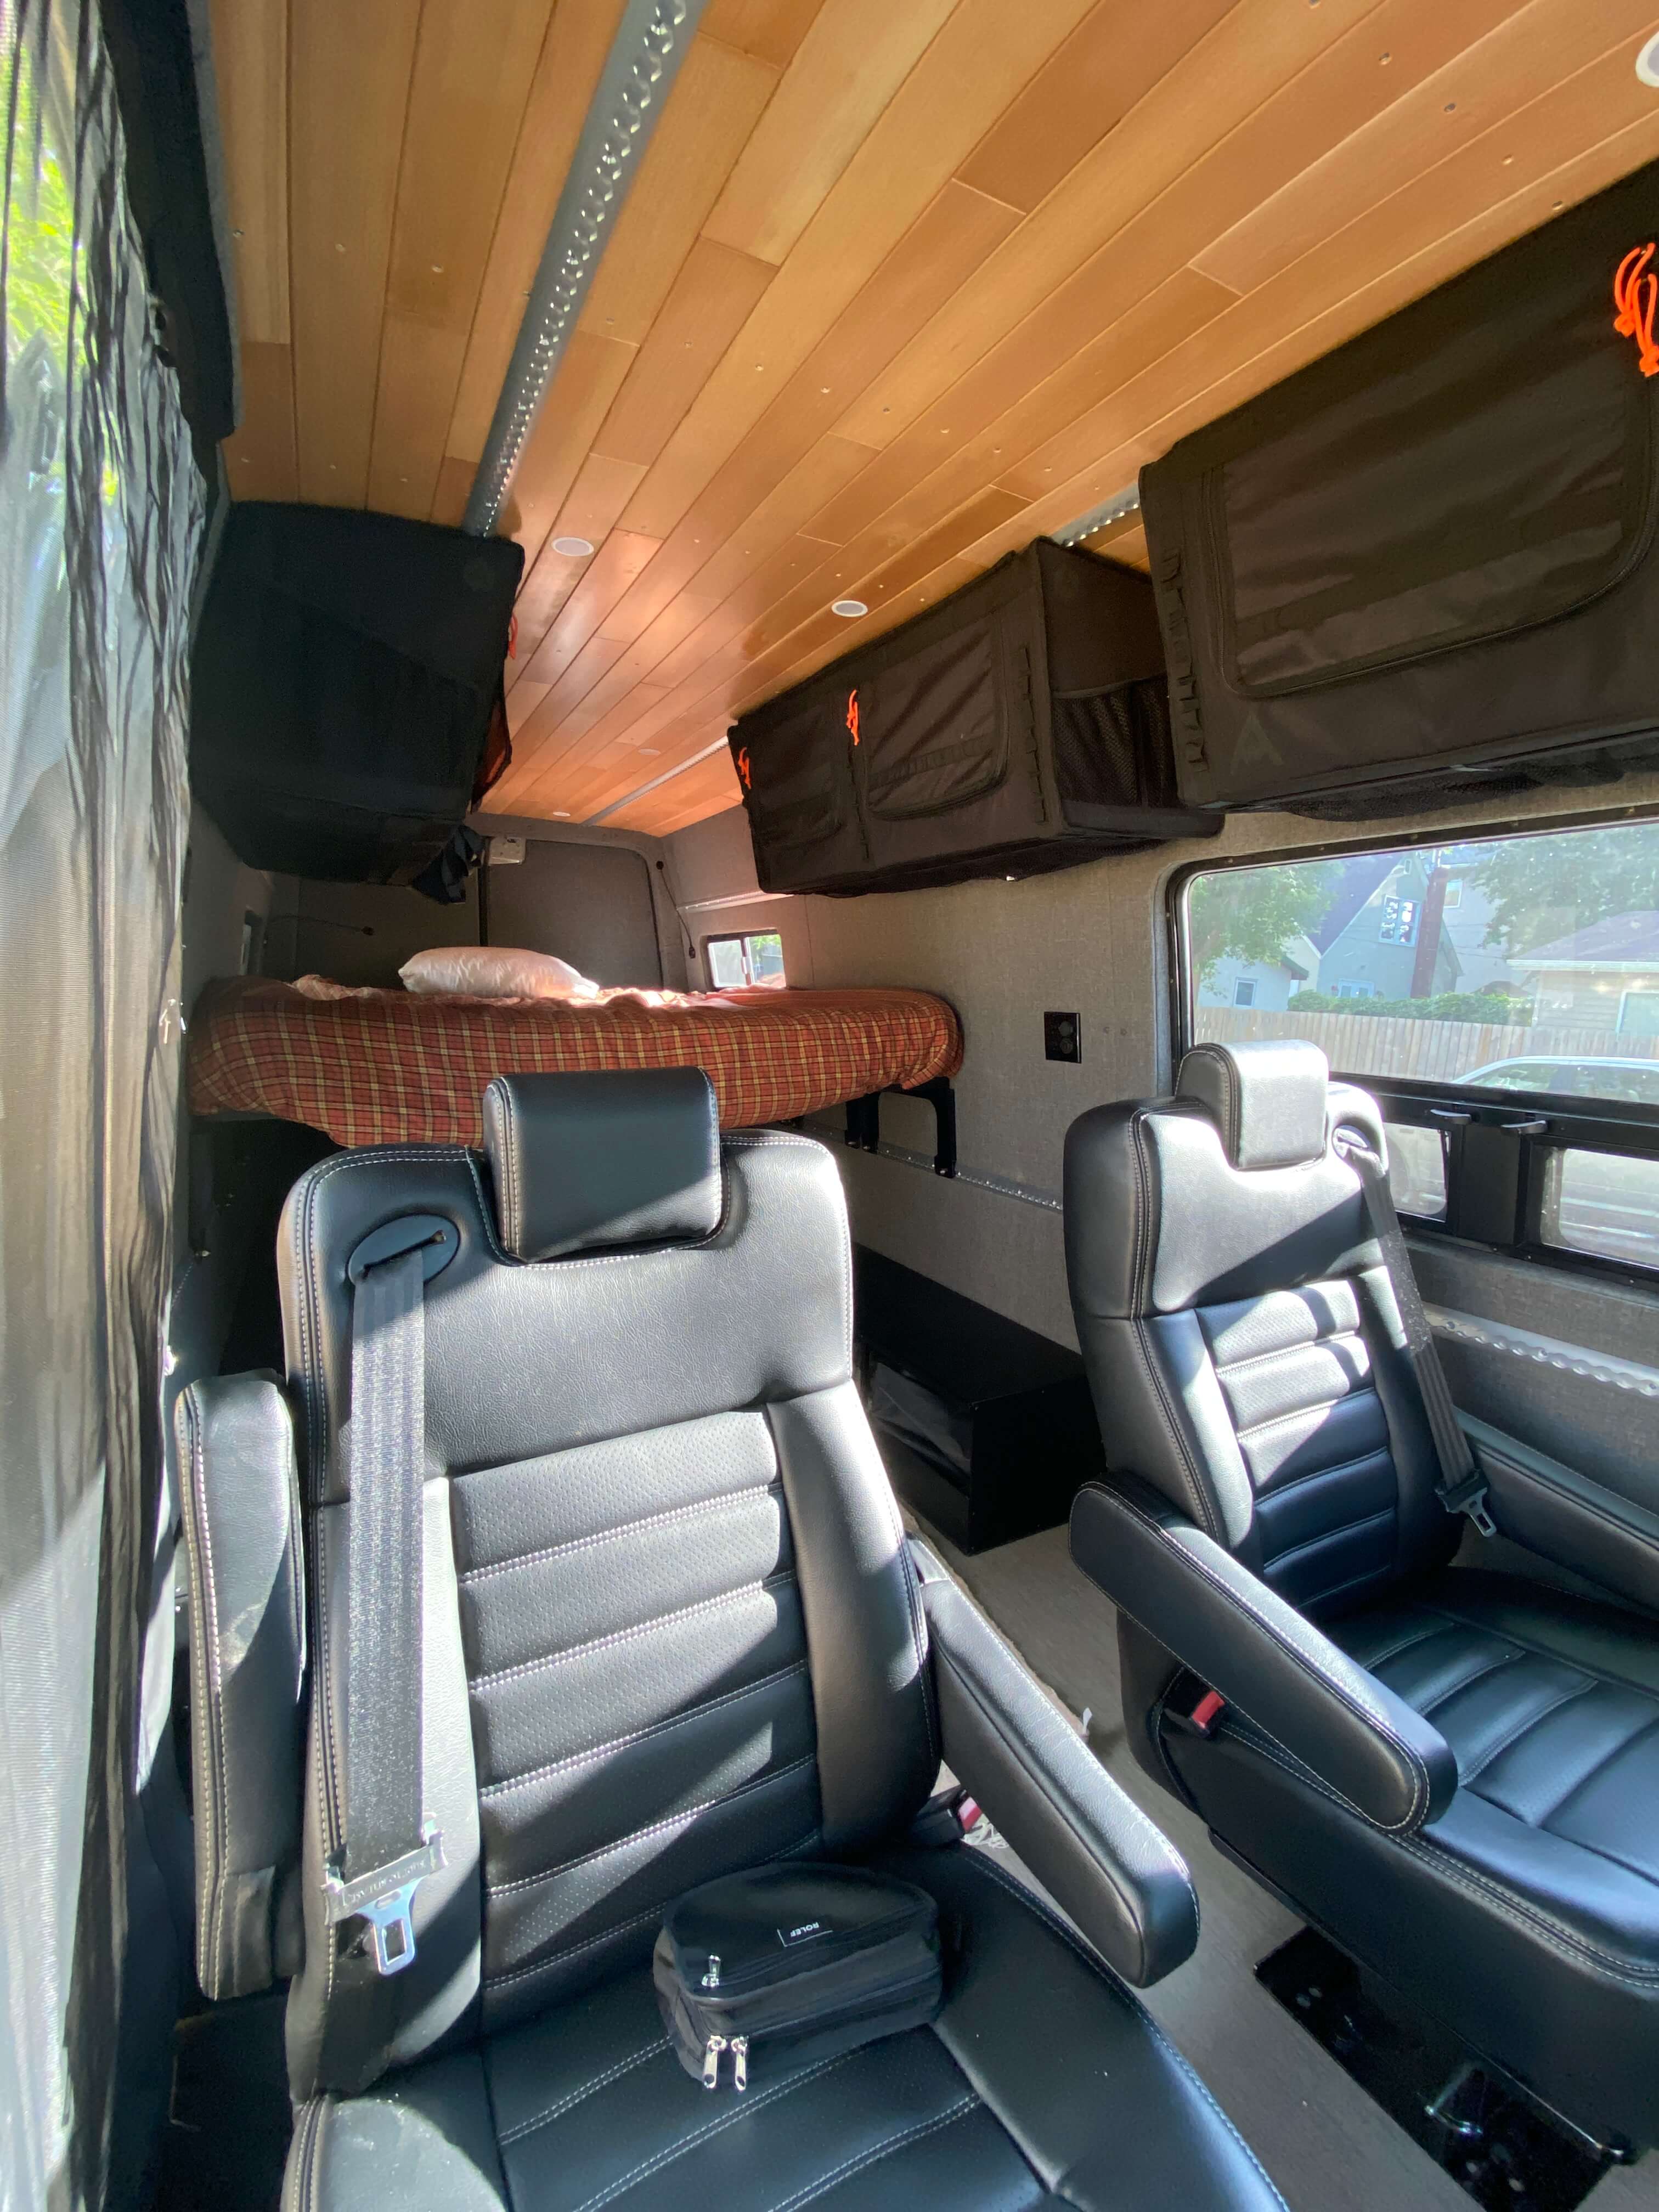 Mercedes Sprinter Camper Vans for Sale — Happy Camper Conversions